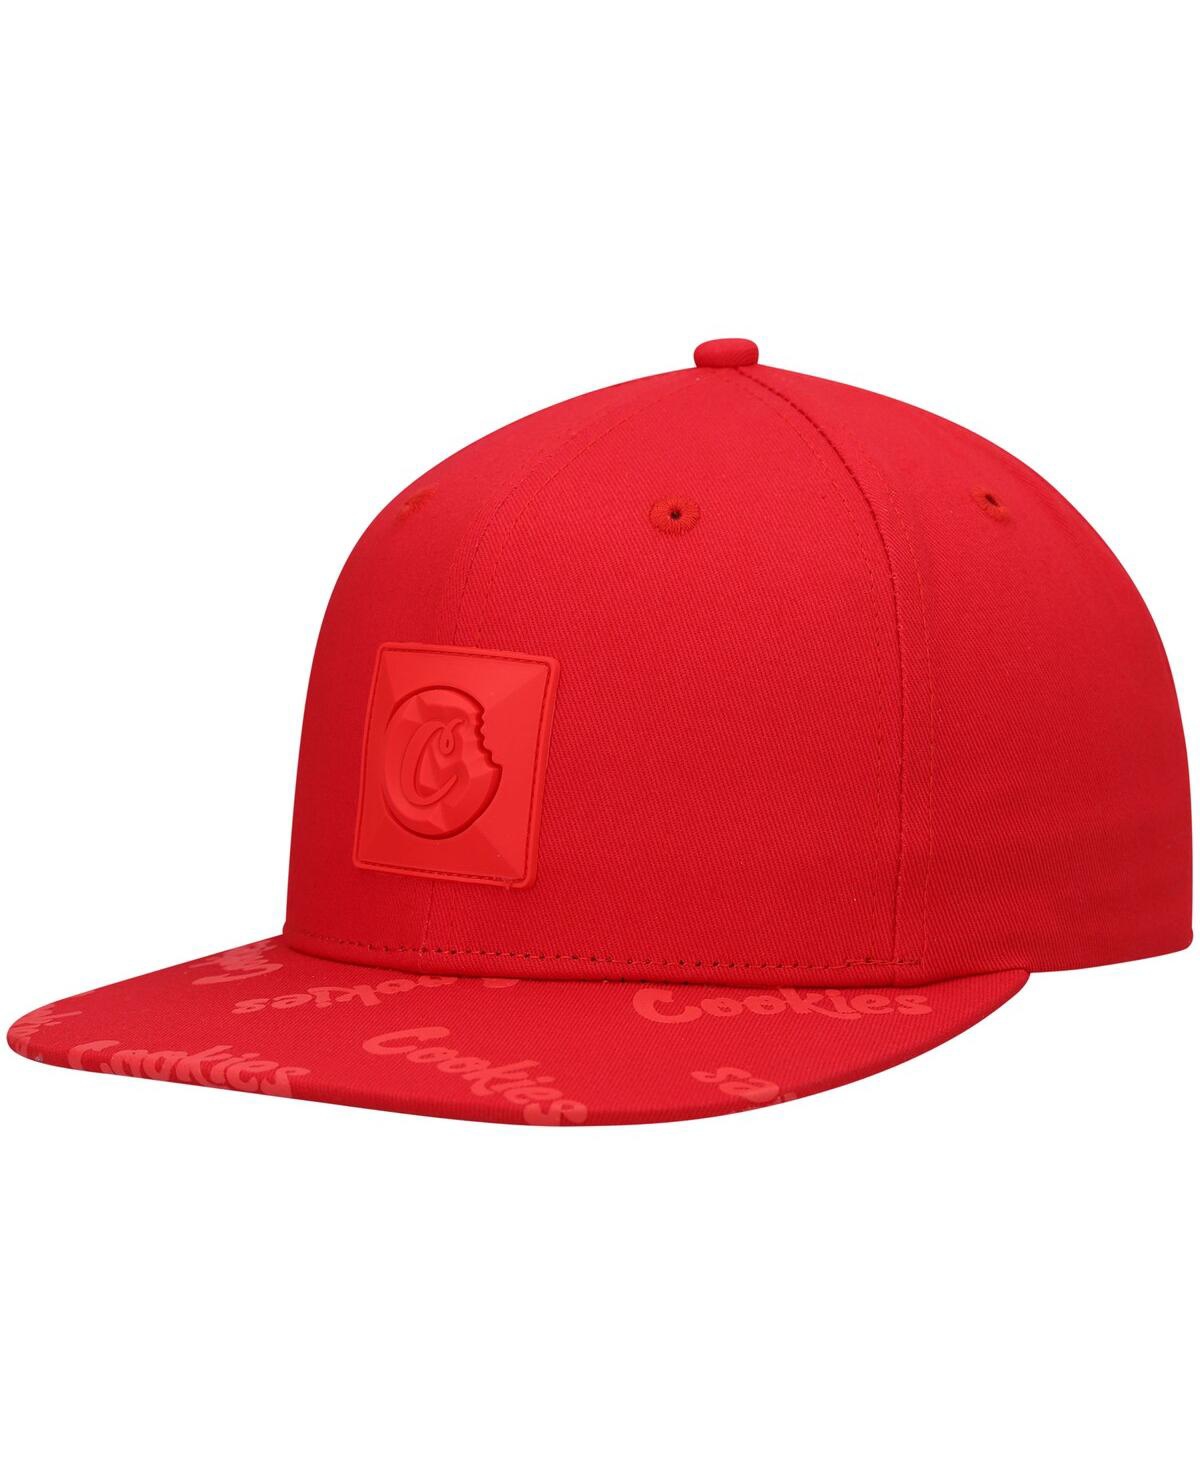 Cookies Men's  Red Monaco Snapback Hat